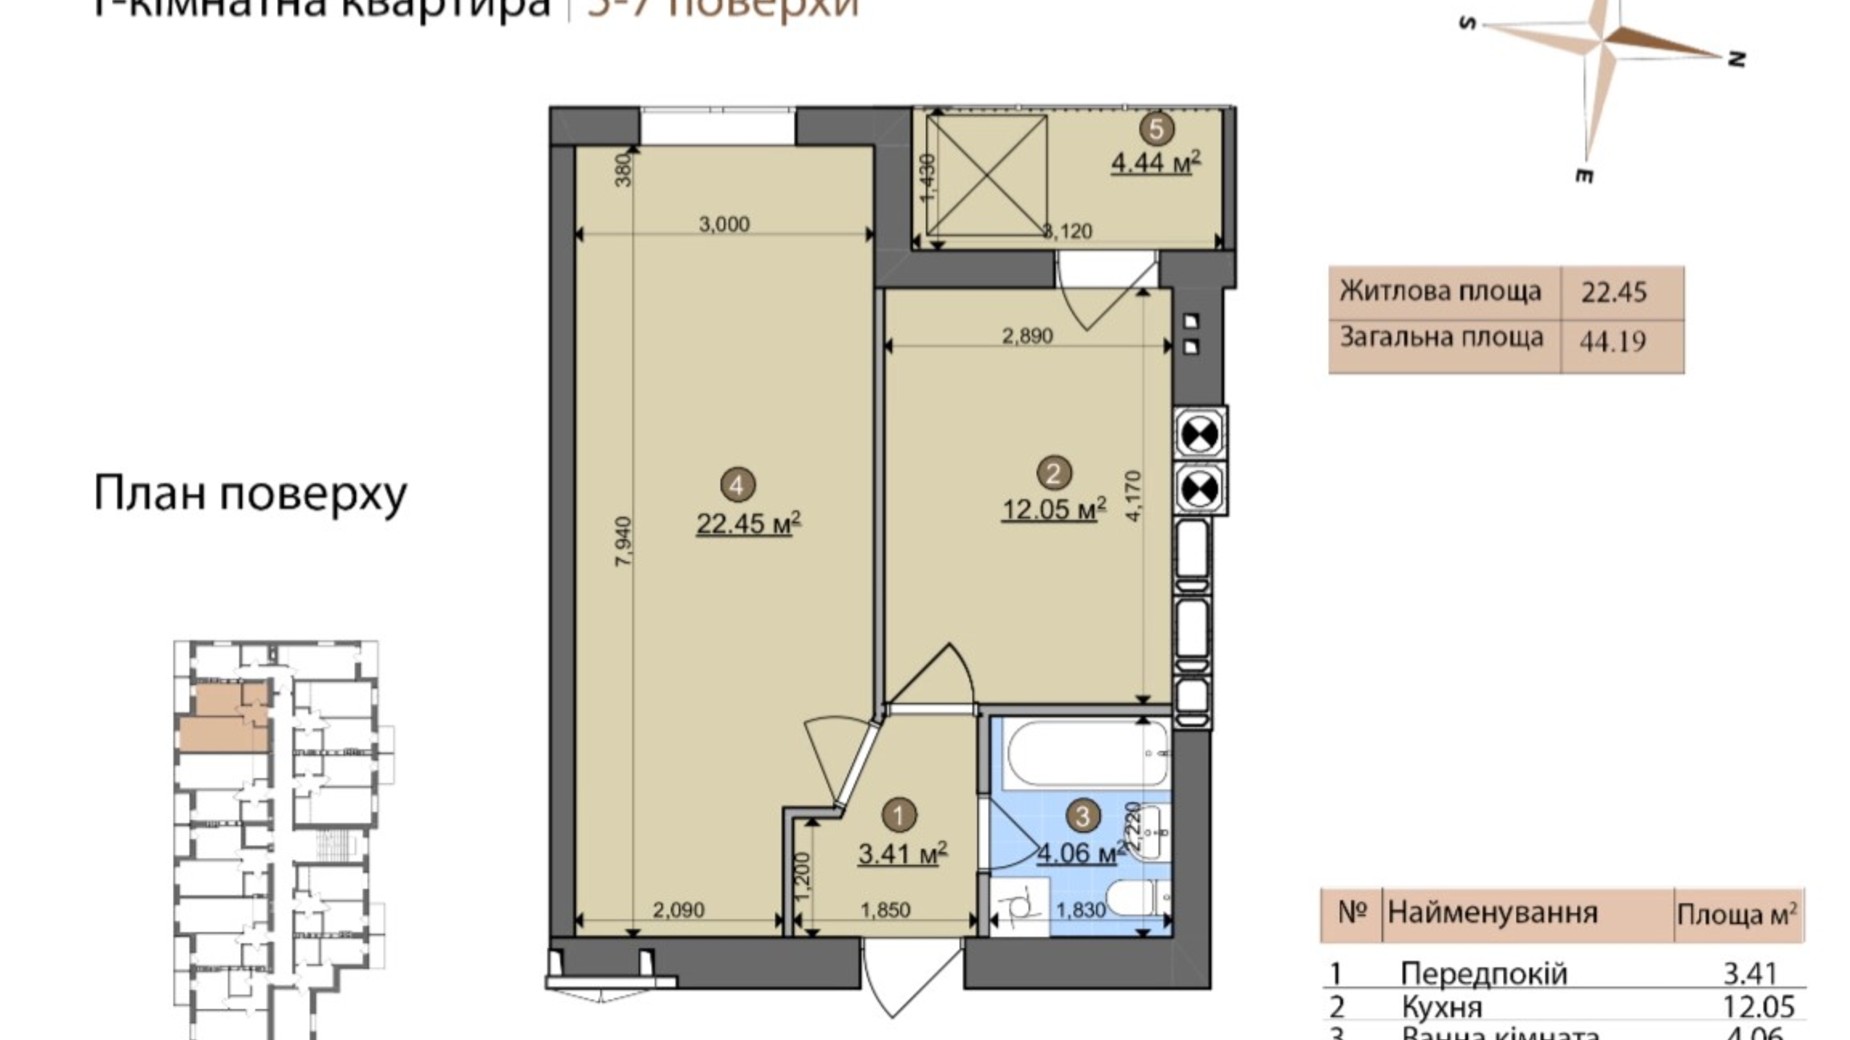 Планировка 1-комнатной квартиры в ЖК Fastiv City 44.19 м², фото 602088